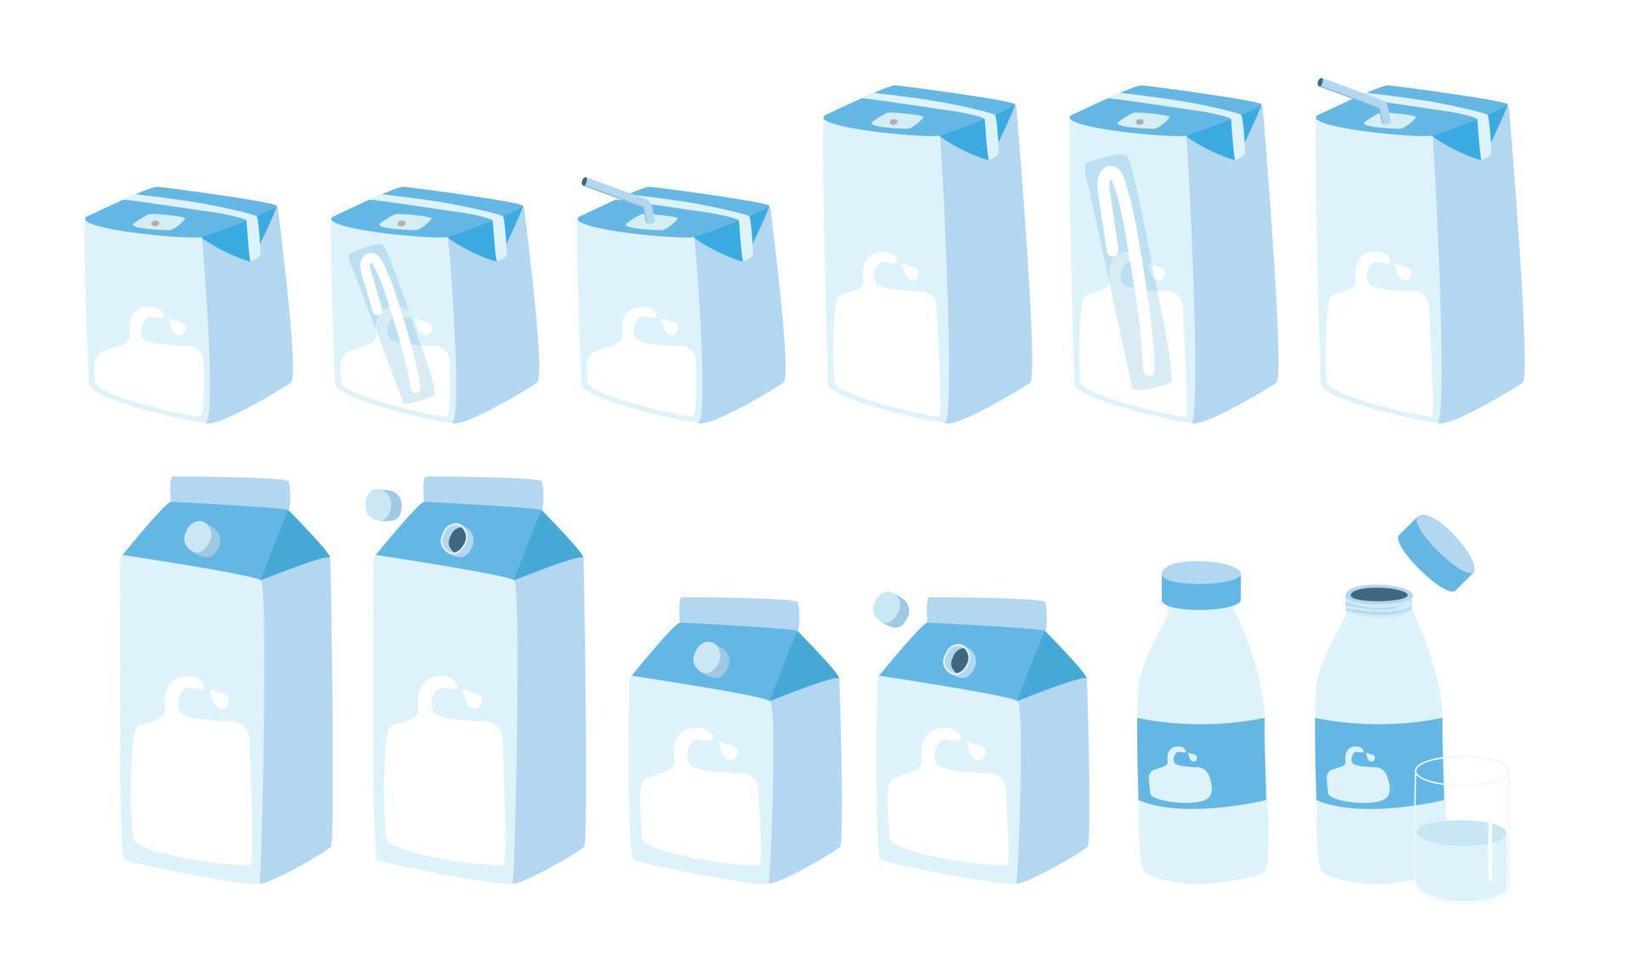 uppsättning av mjölk kartong lådor annorlunda storlekar ClipArt. mjölk kartong paket med sugrör och keps vektor design. mjölk låda, flaska och glas söt teckning klotter stil. mejeri Produkter papper och glas paket